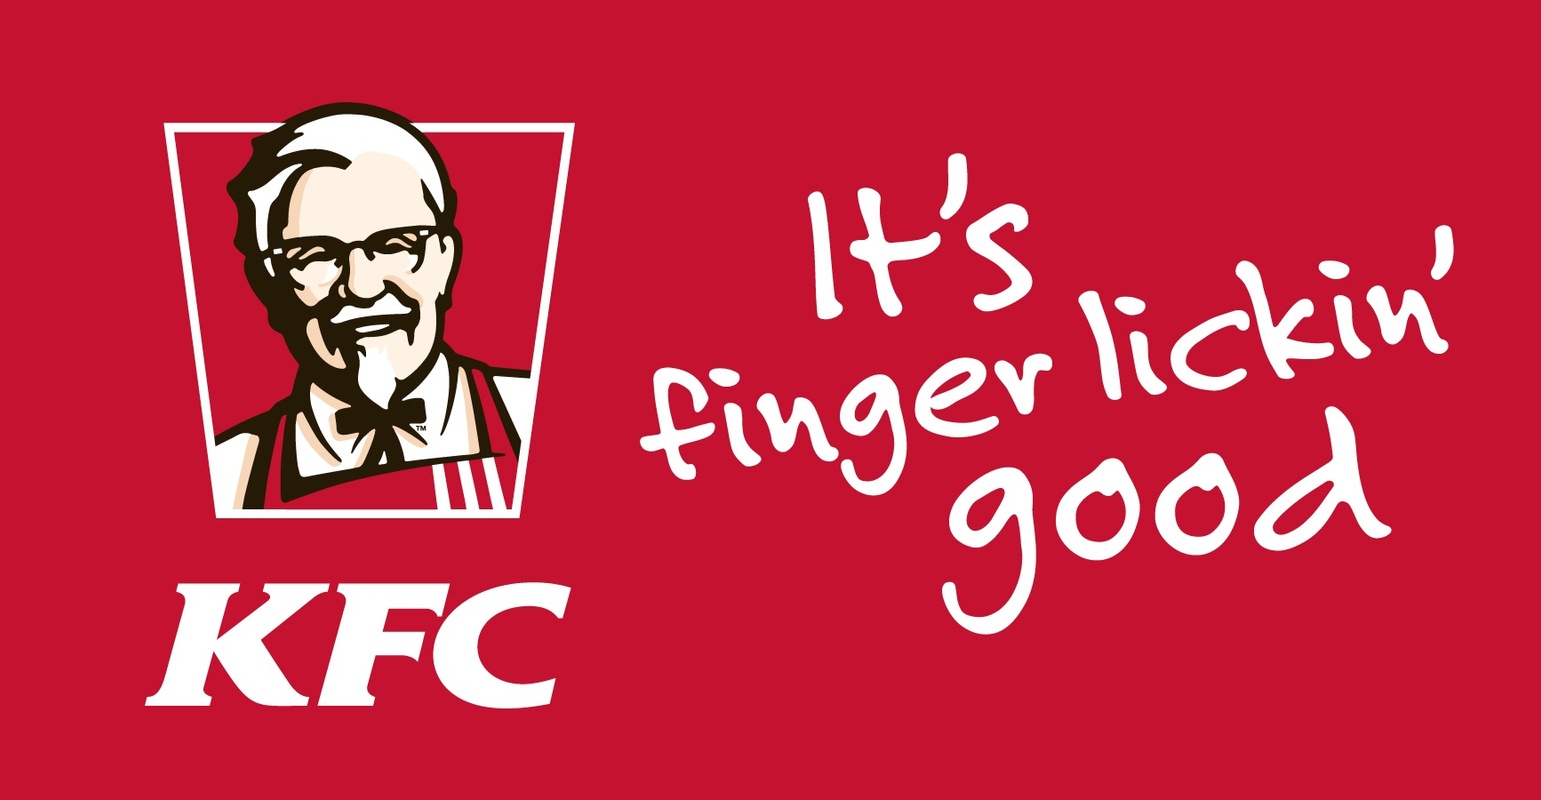 KFC-slogans.jpg